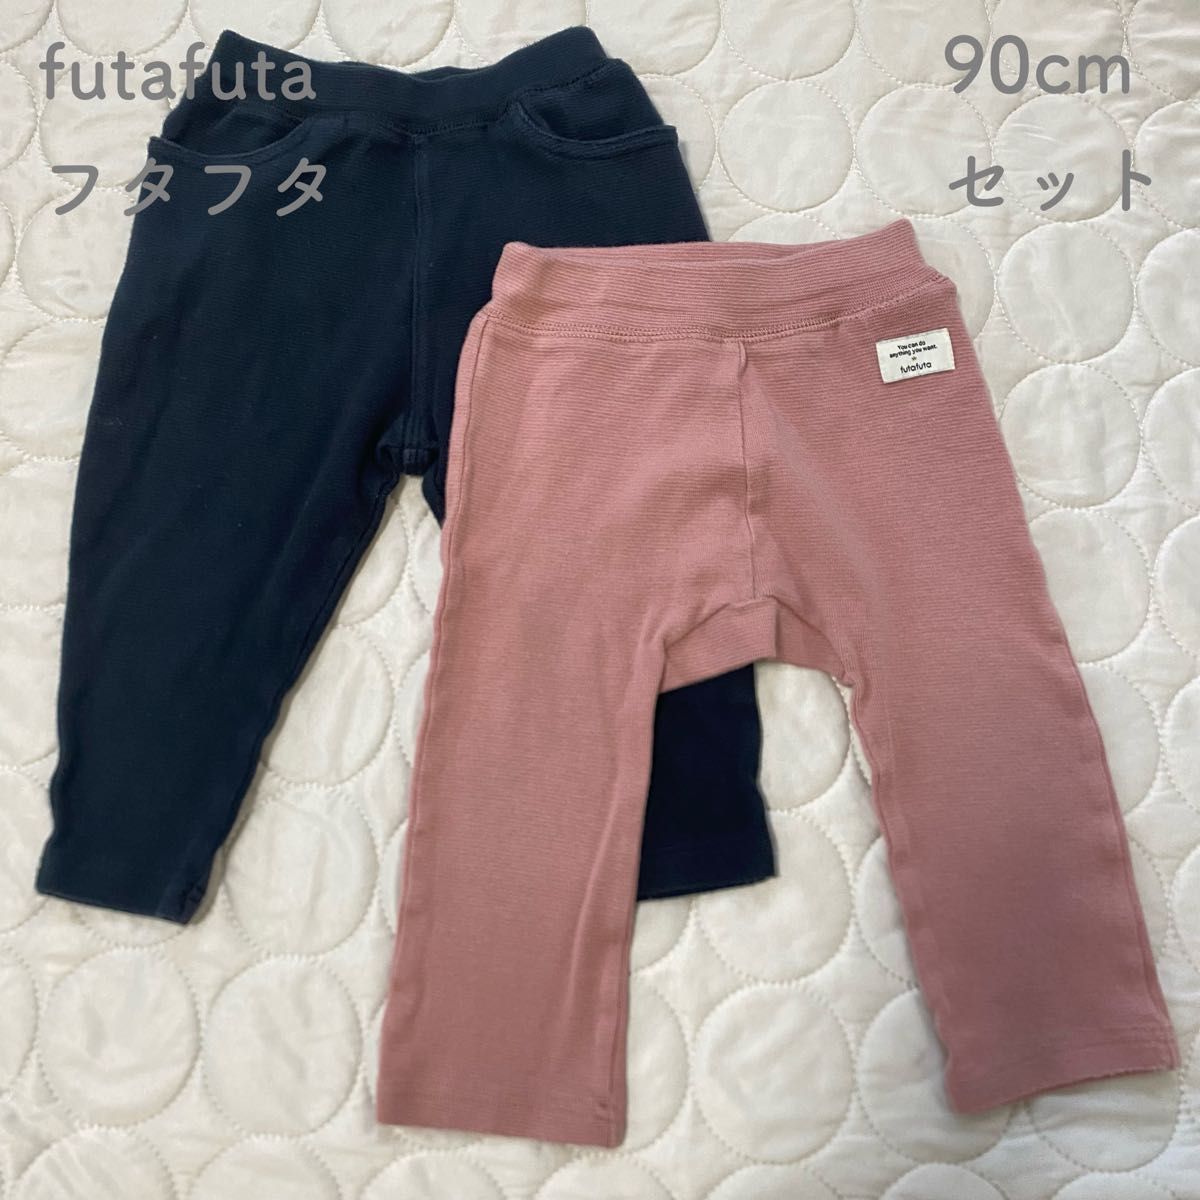 futafuta(フタフタ)/90cmセット